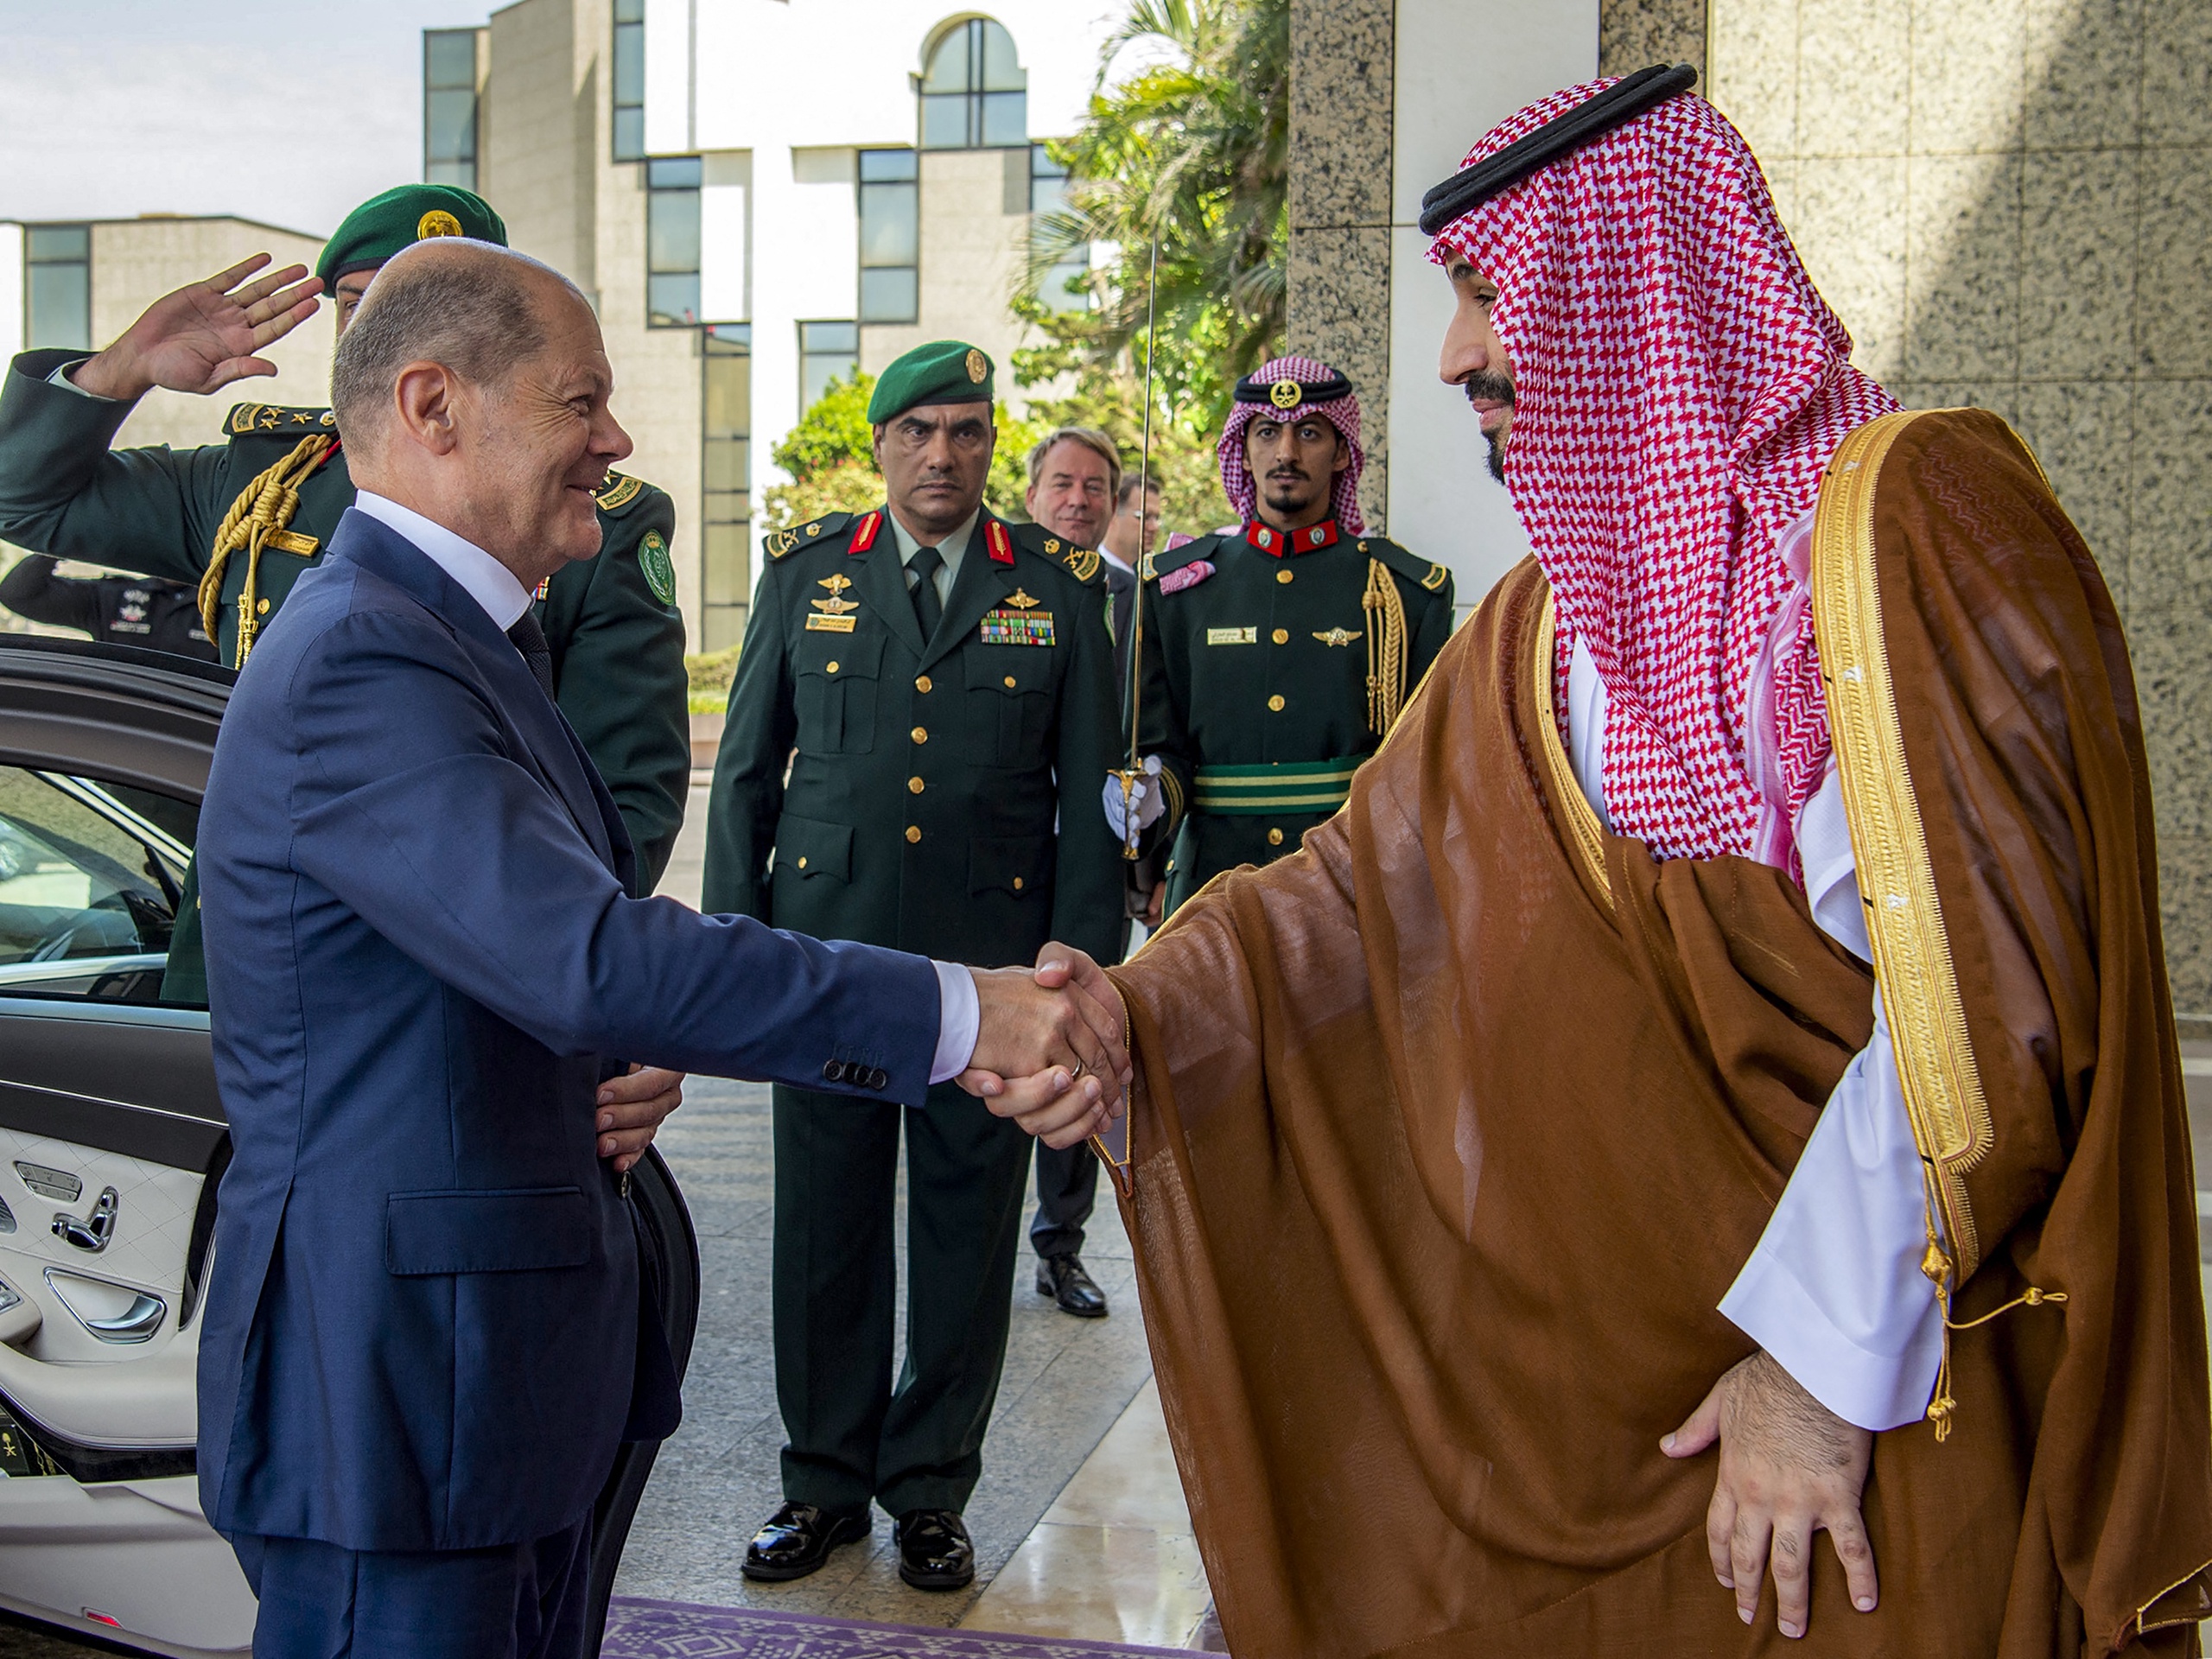 LNG-vriendschap: de Duitse bondskanselier Scholz schudt de hand van de Saoedische kroonprins Mohammed bin Salman in het al-Salam Palace in Jeddah. 